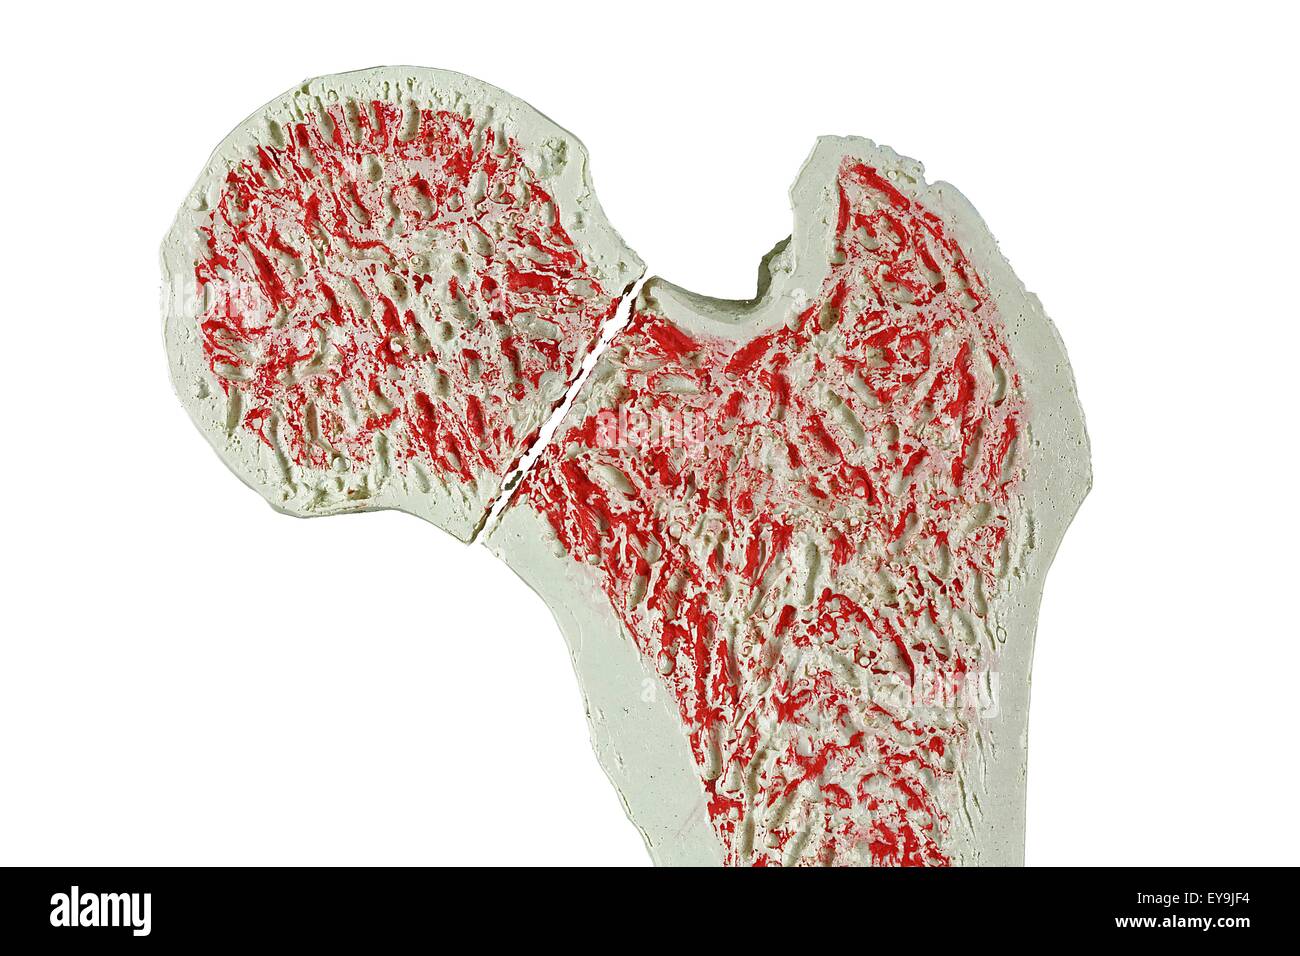 Sezione trasversale attraverso un modello di una frattura del collo del femore (femore). Foto Stock